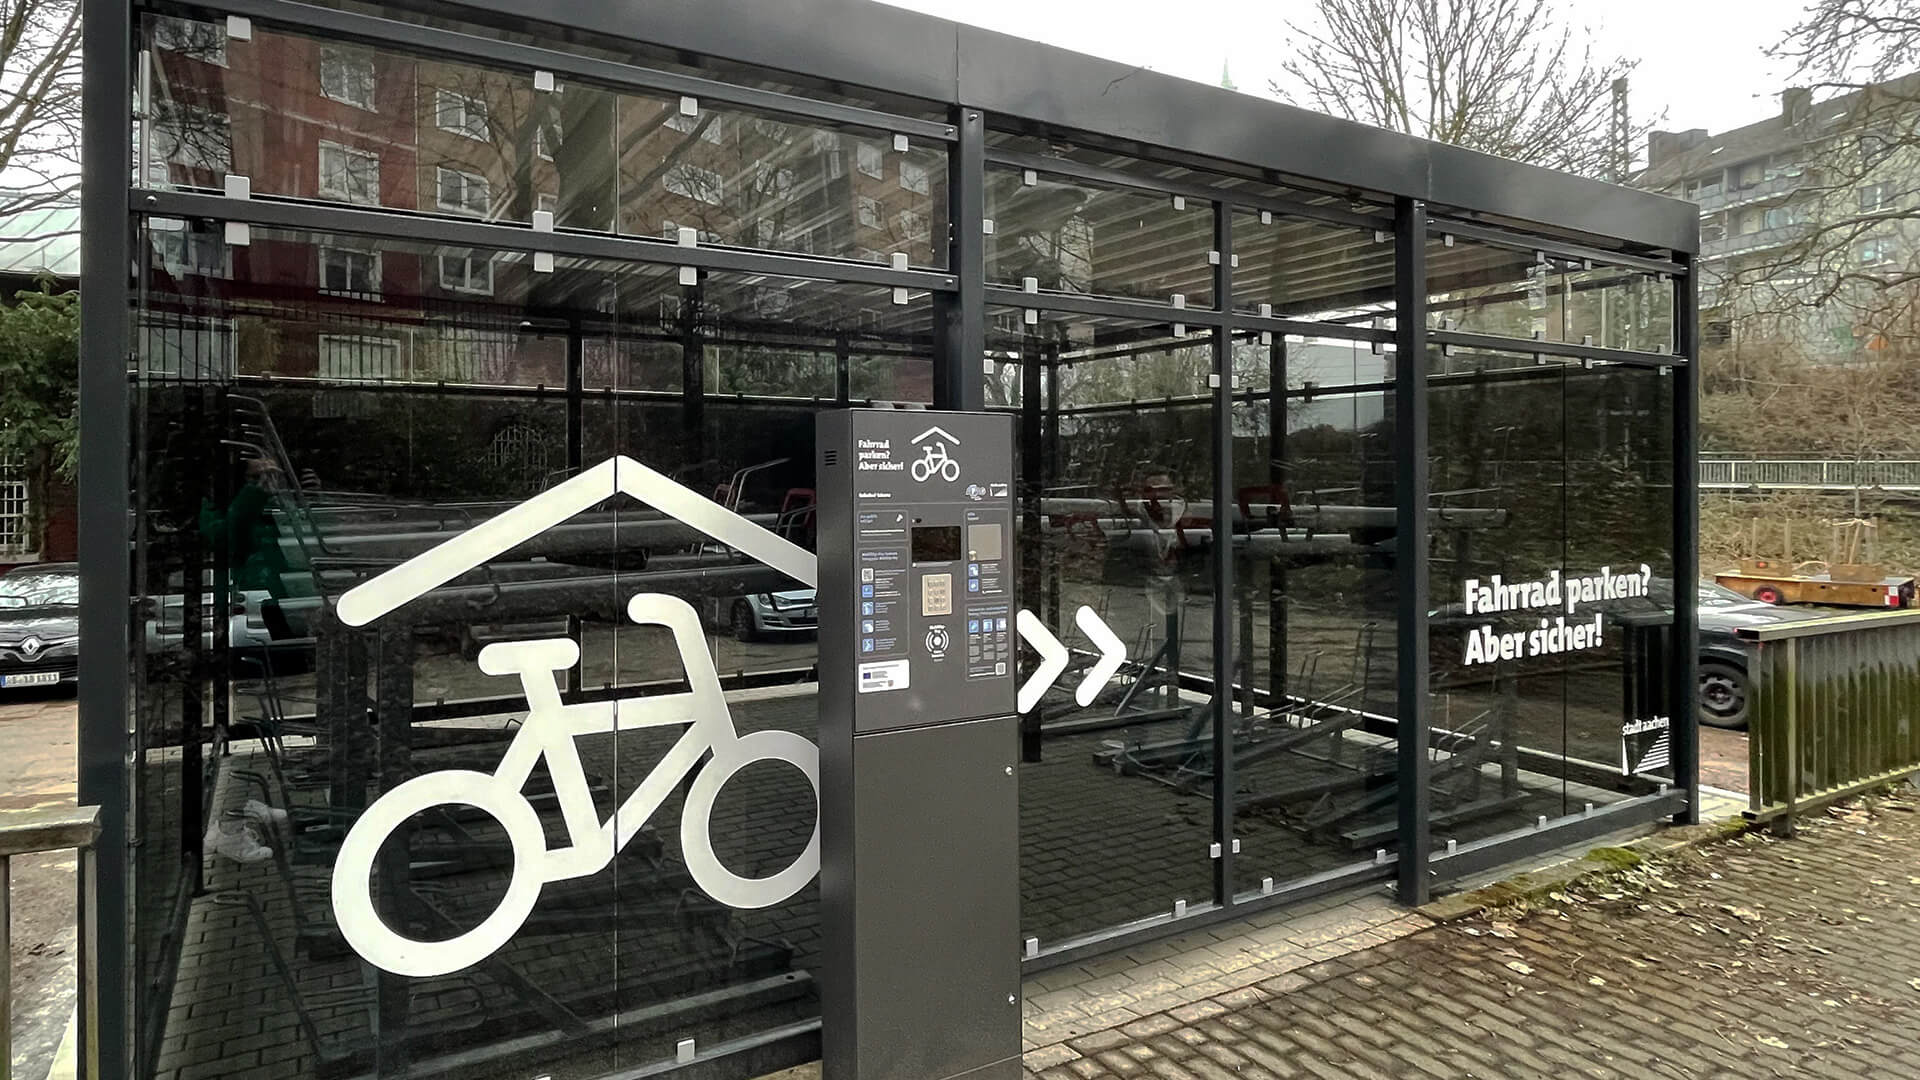 Testpersonen für neue Bike-Stations gesucht